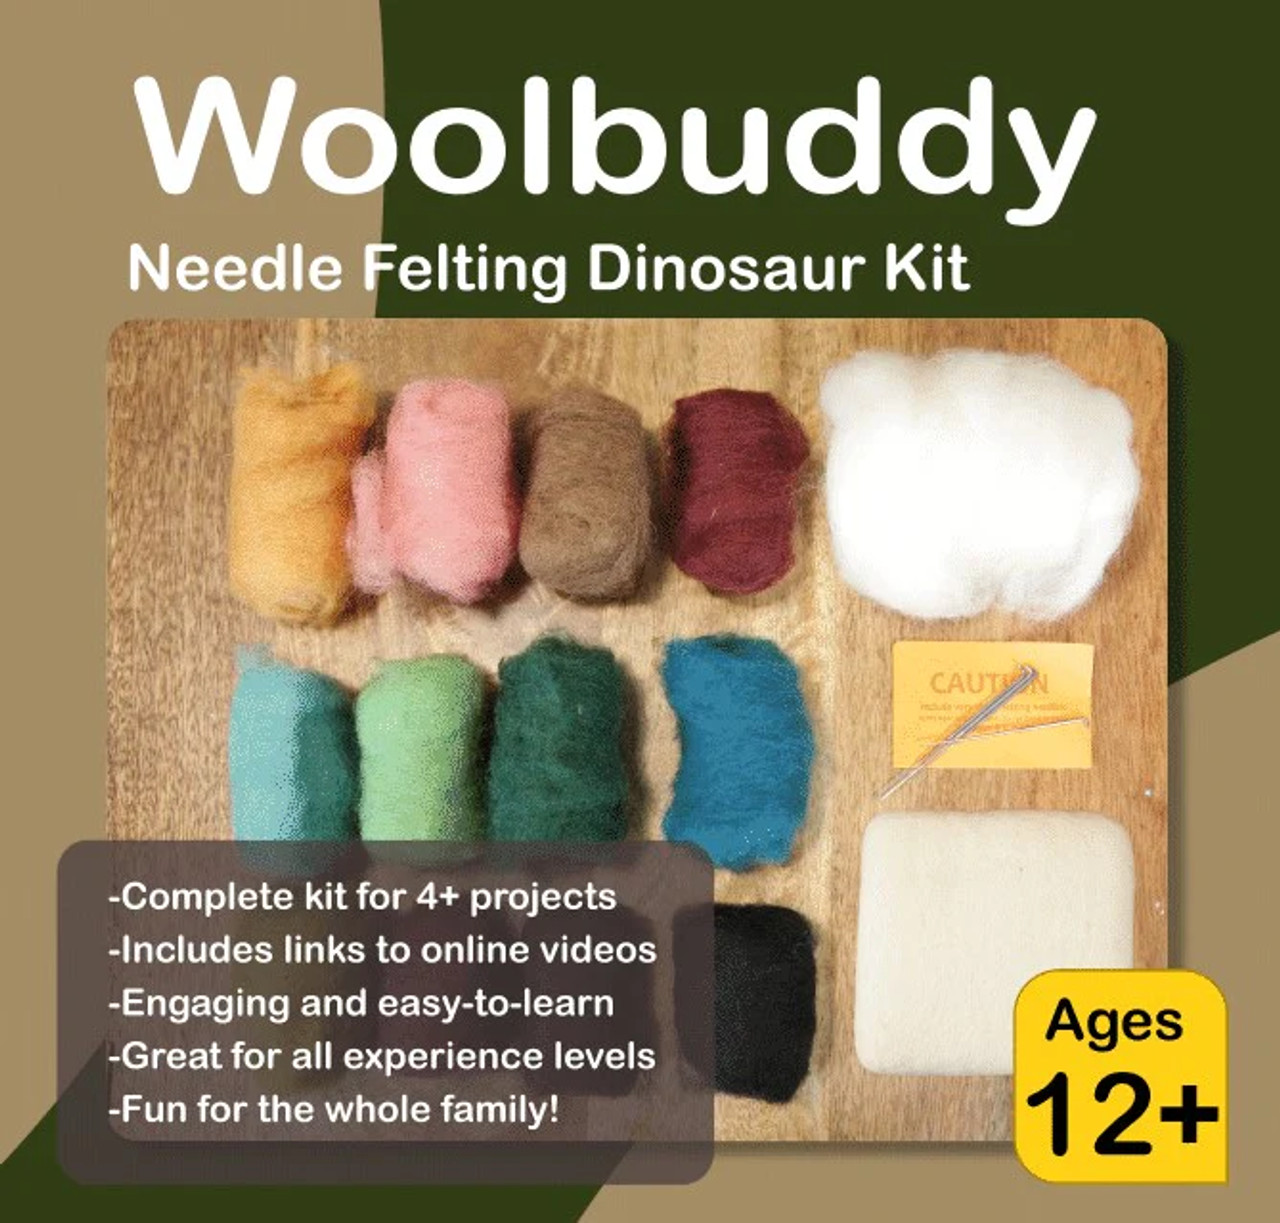 Woolbuddy Needle Felting Kit - Unicorn Kit